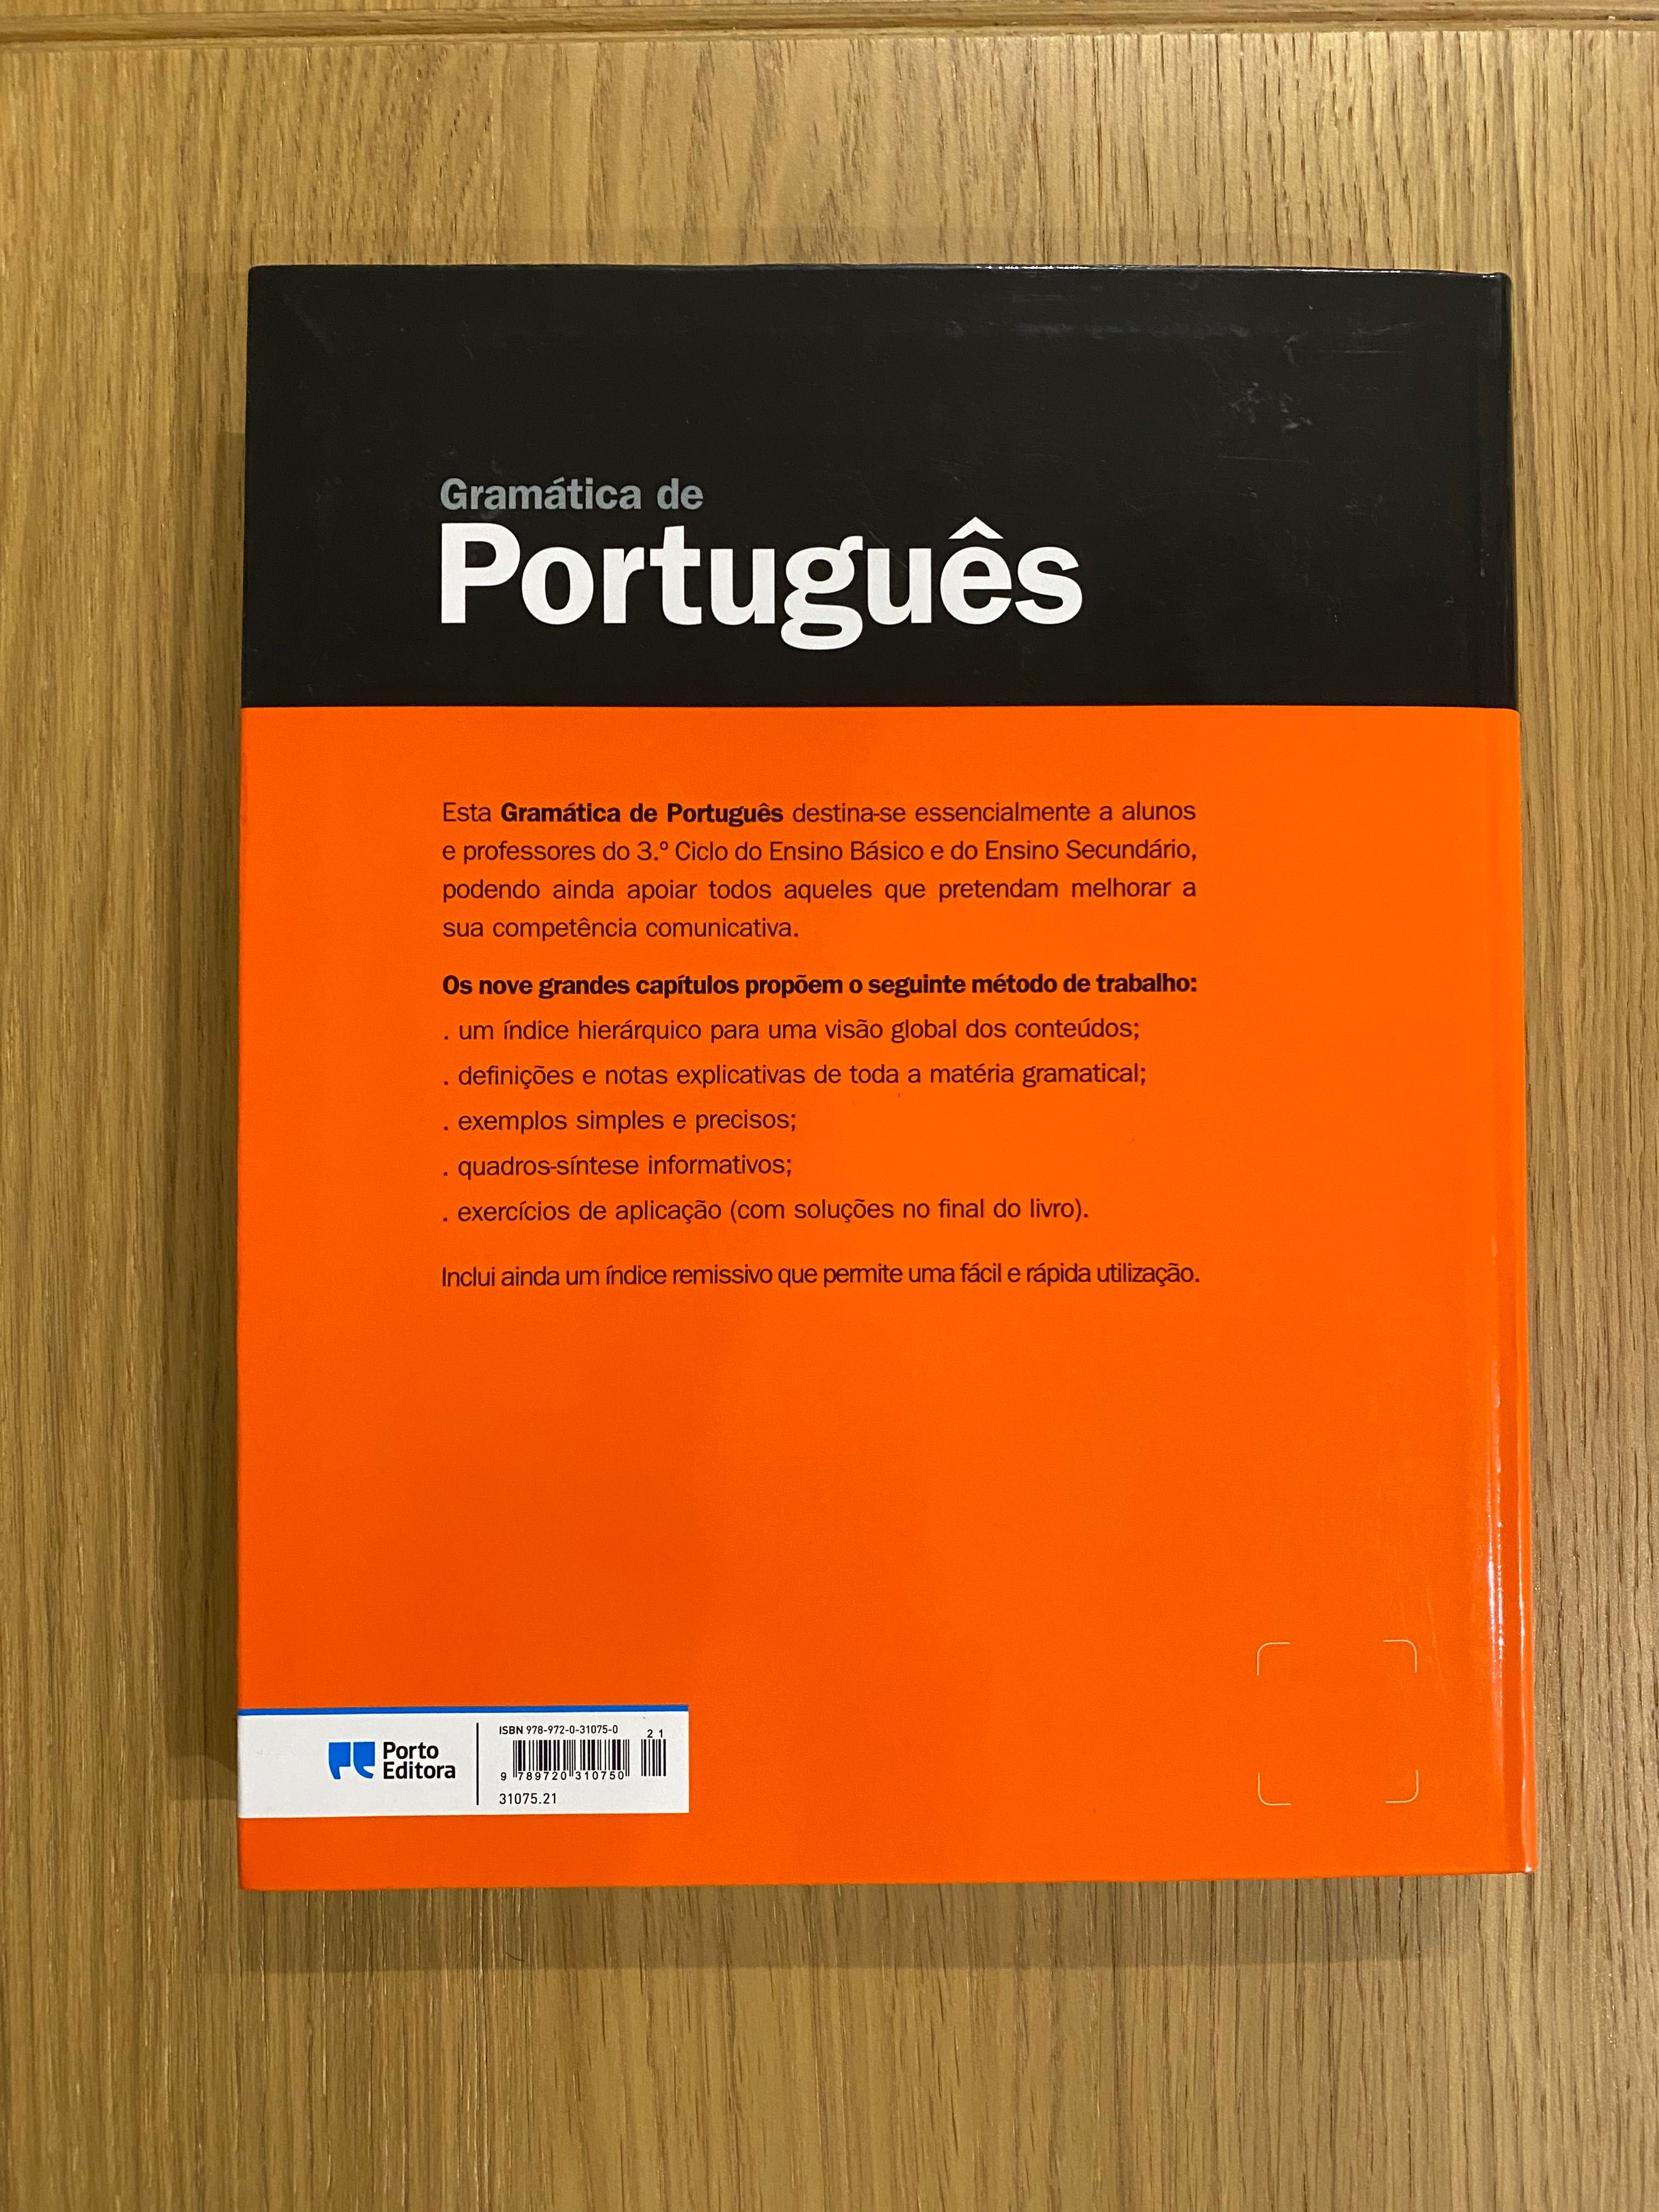 Gramática de Português - 3.º Ciclo do Ensino Básico e Secundário